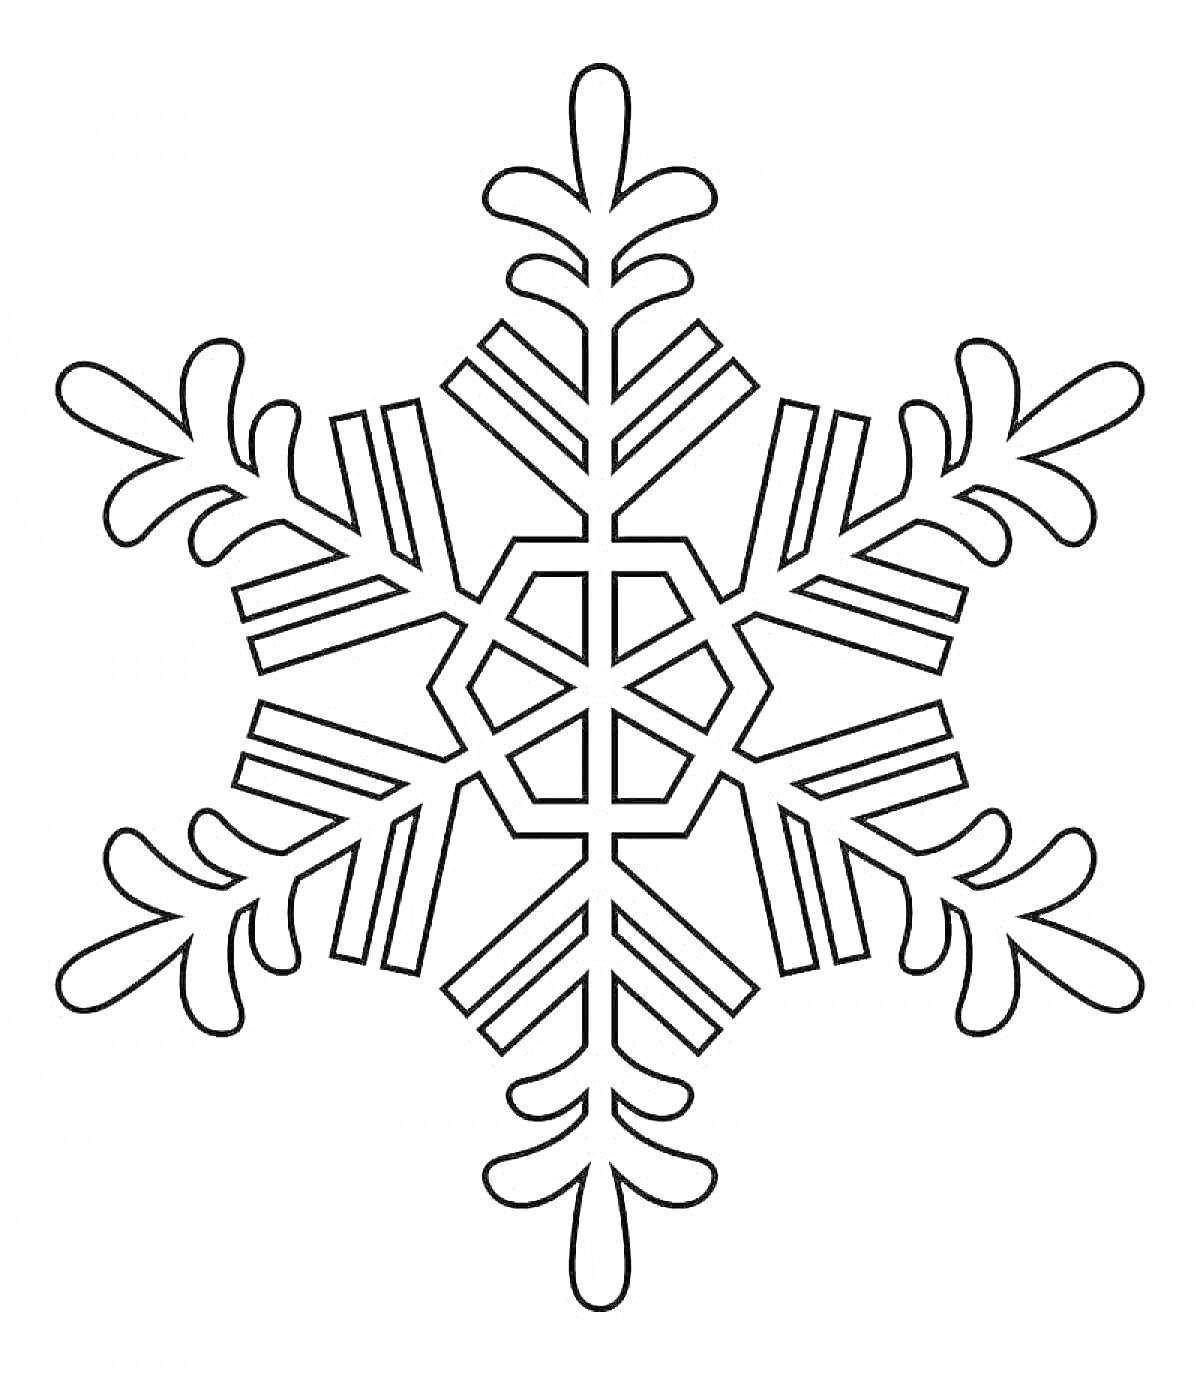 Раскраска Снежинка с геометрическими узорами и изогнутыми краями